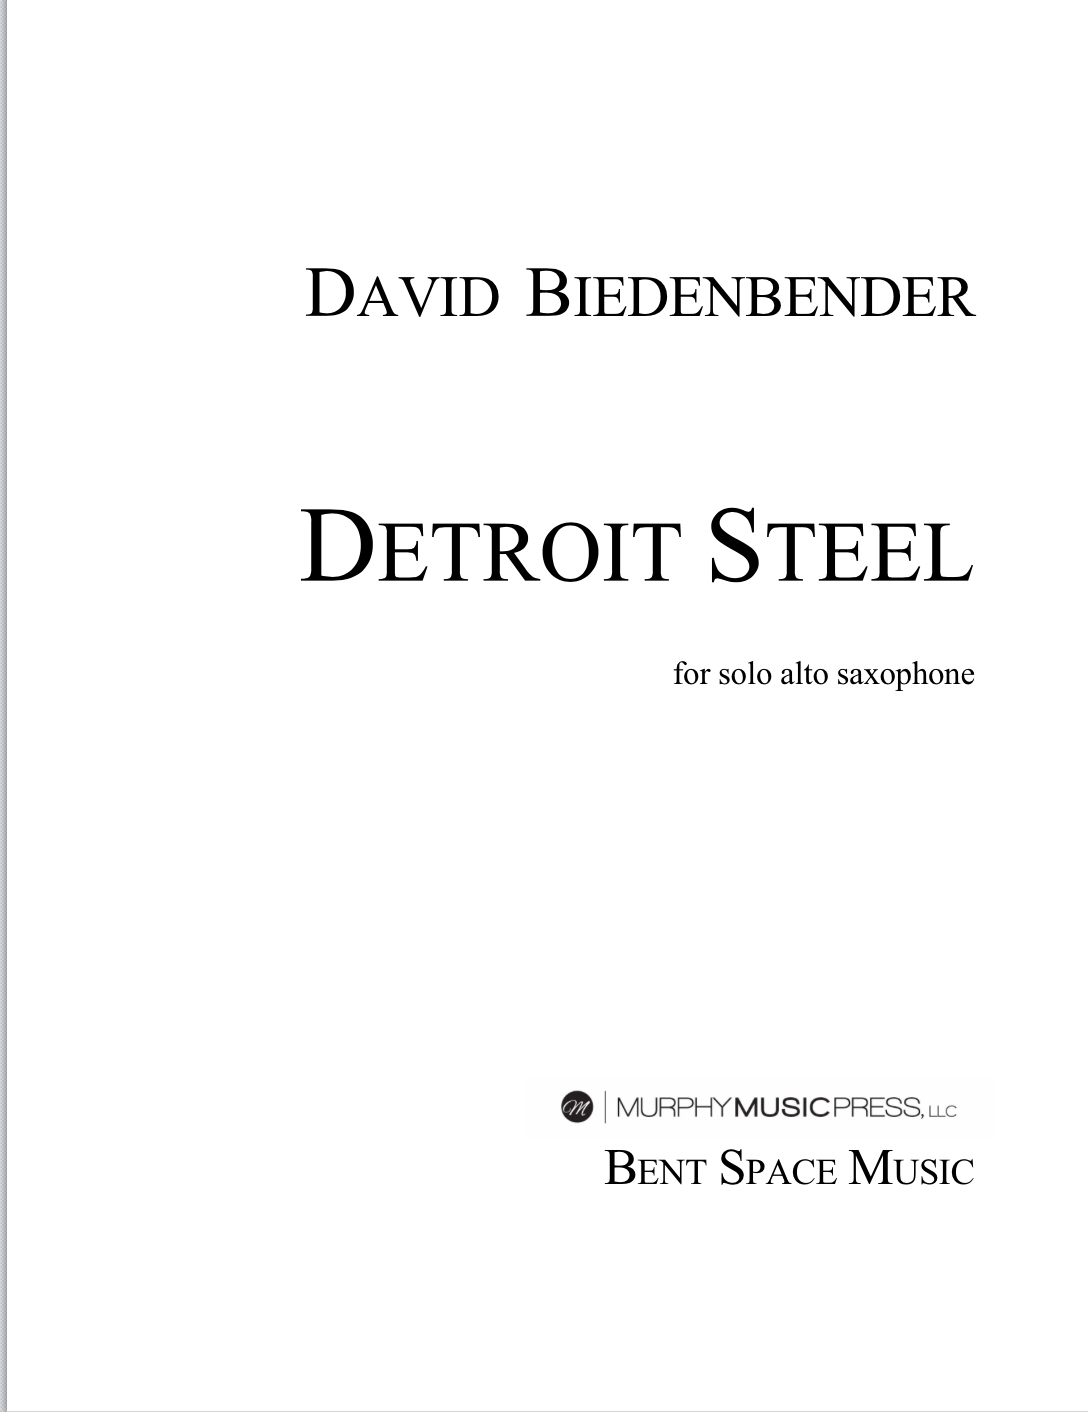 Detroit Steel by David Biedenbender 